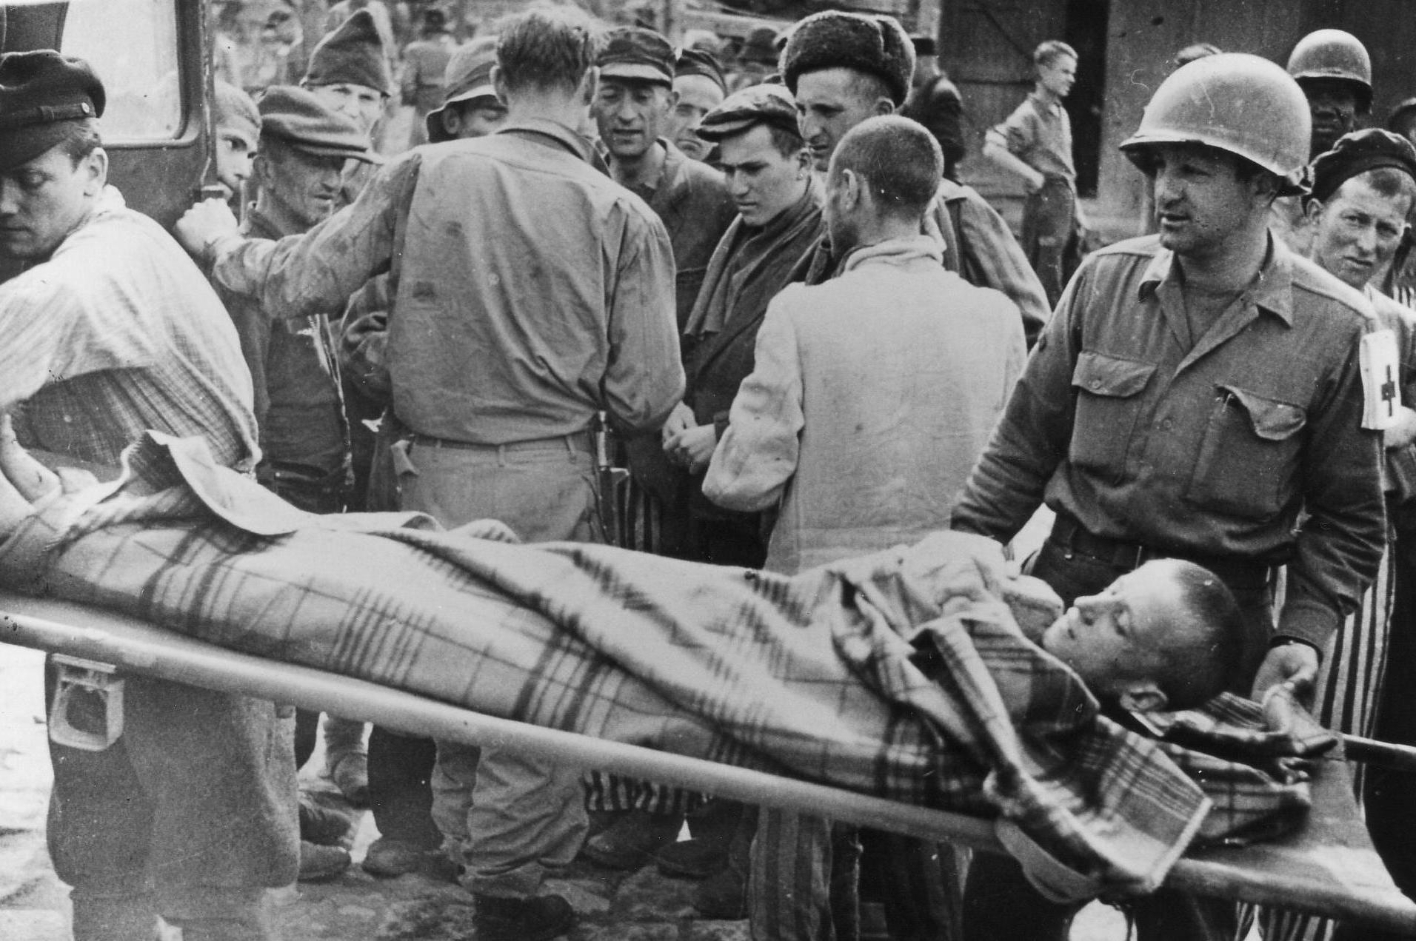 Ein auf einer Bahre liegender, in eine Decke eingehüllter Mann wird in einen Transporter geladen. Ein Soldat mit Sanitäter-Zeichen führt die Trage. Im Hintegrund stehen Angehörige der U.S. Armee sowie befreitete Häftlinge.